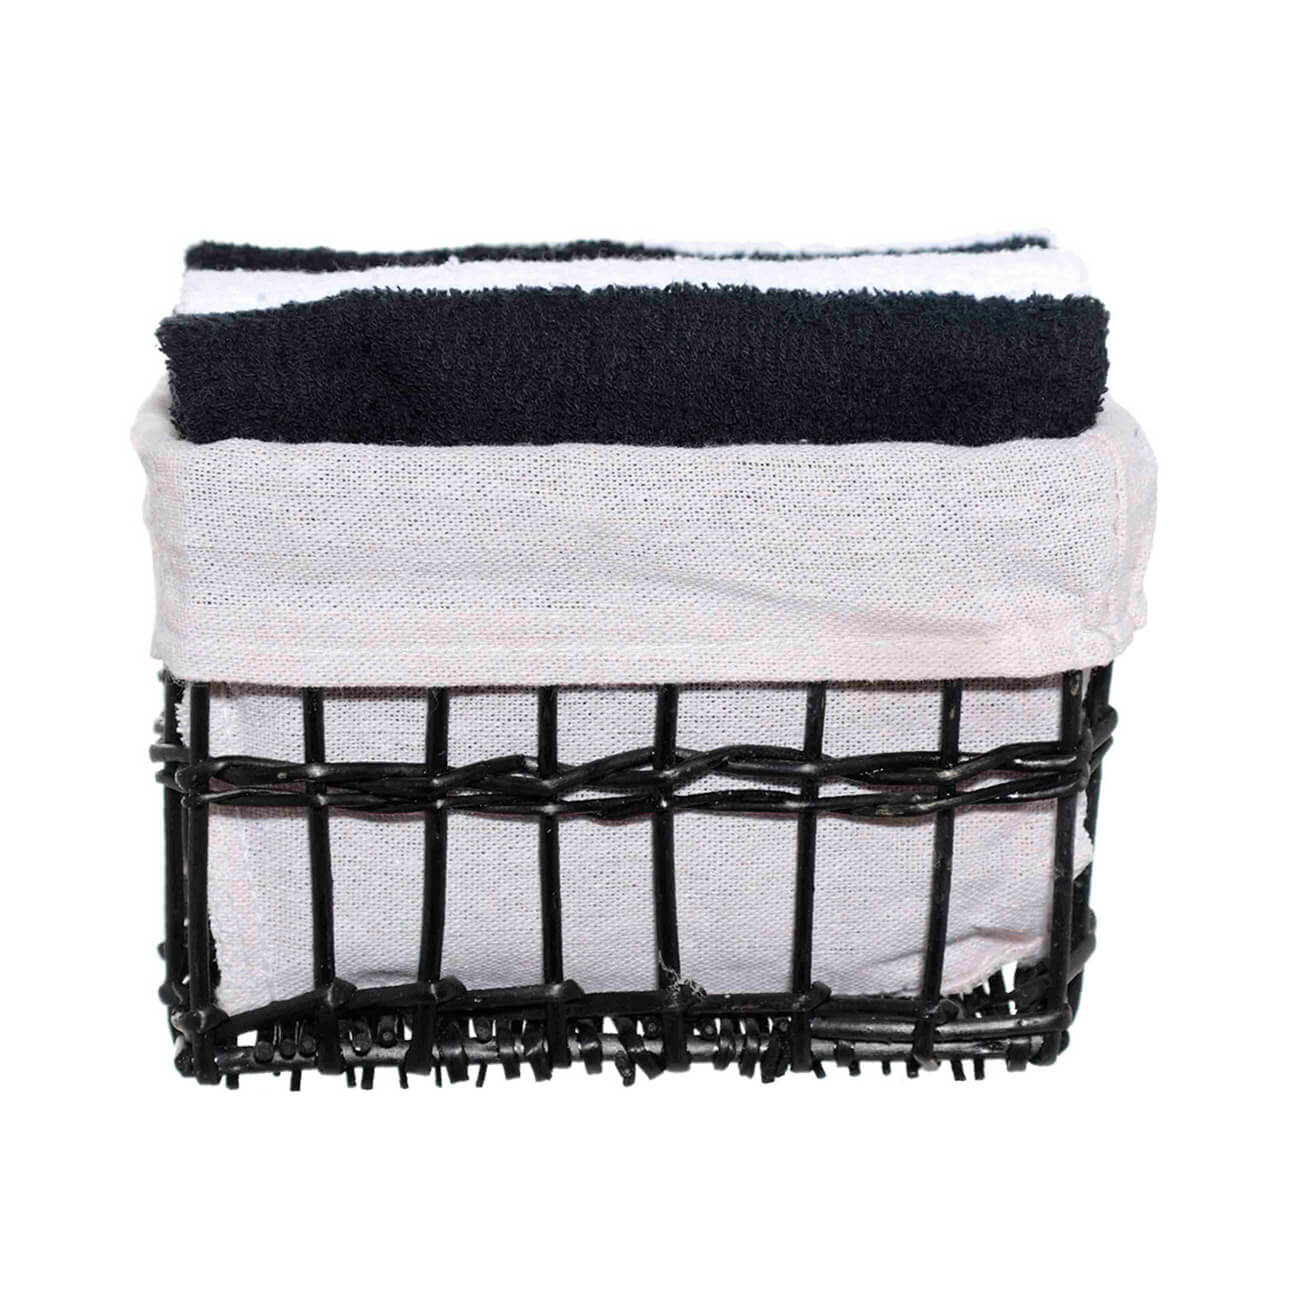 Полотенце, 30х30 см, 4 шт, в корзине, хлопок/лоза, черное/белое, Basket towel полотенце eumenia 70x140 см белое